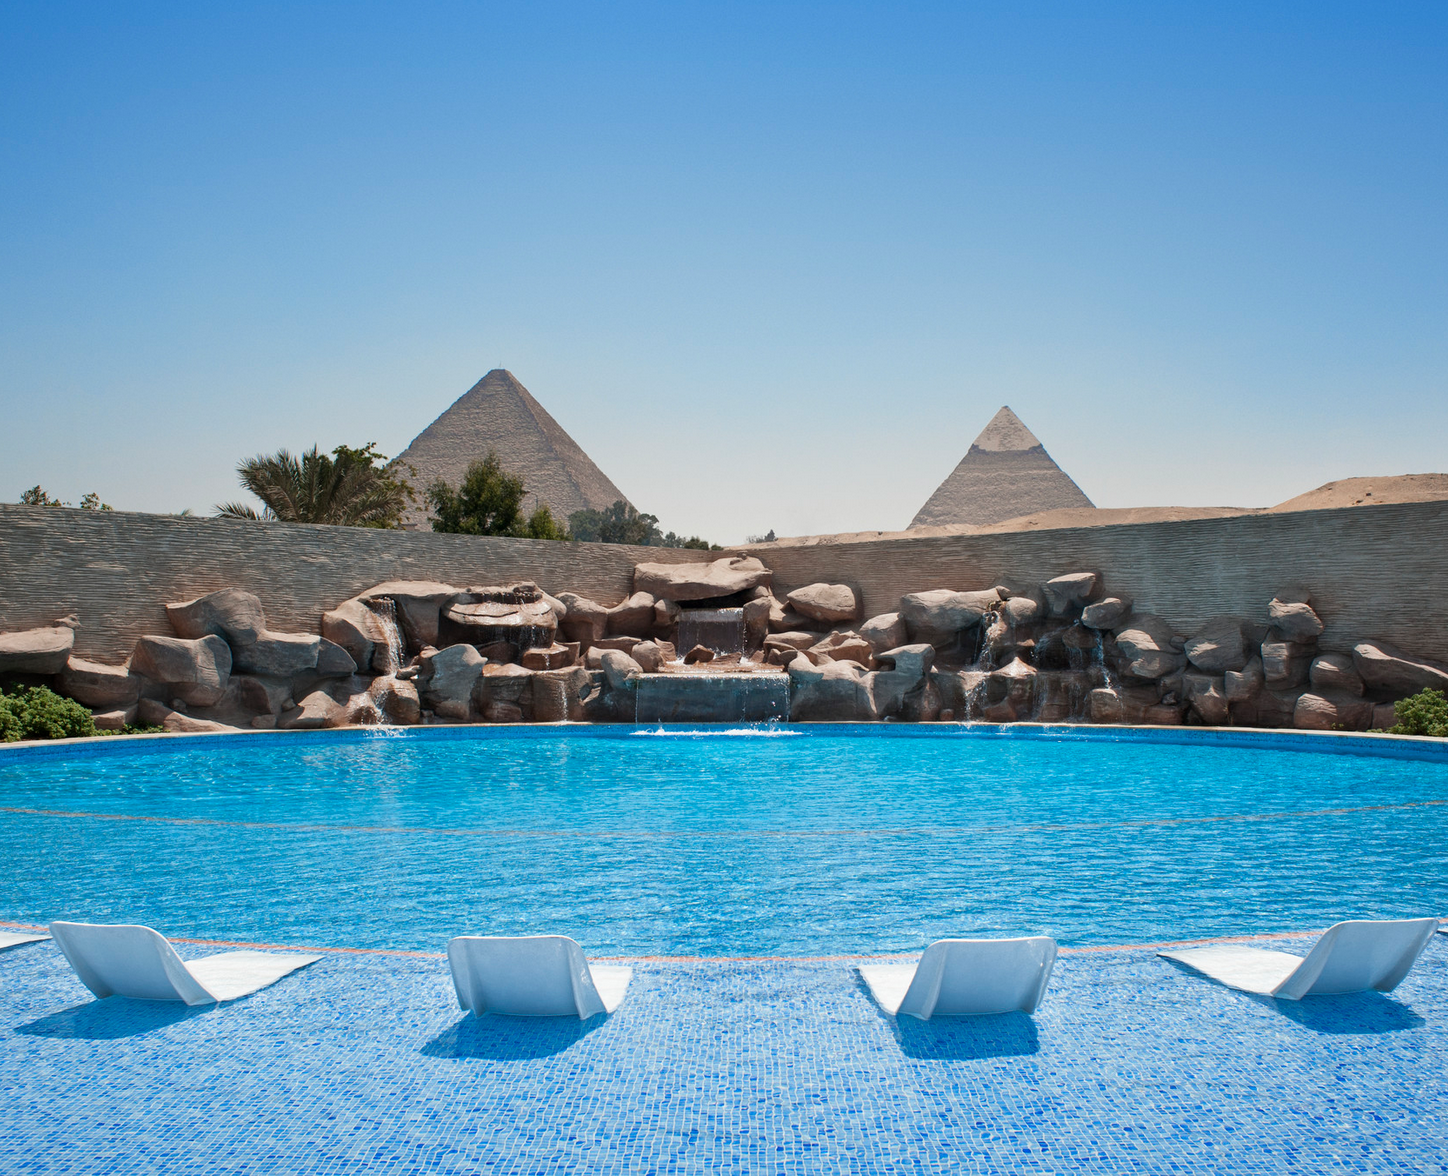 世界遺産ピラミッドを優雅に鑑賞することができるリゾート「ルメリディアン・ピラミッド・ホテル&スパ」